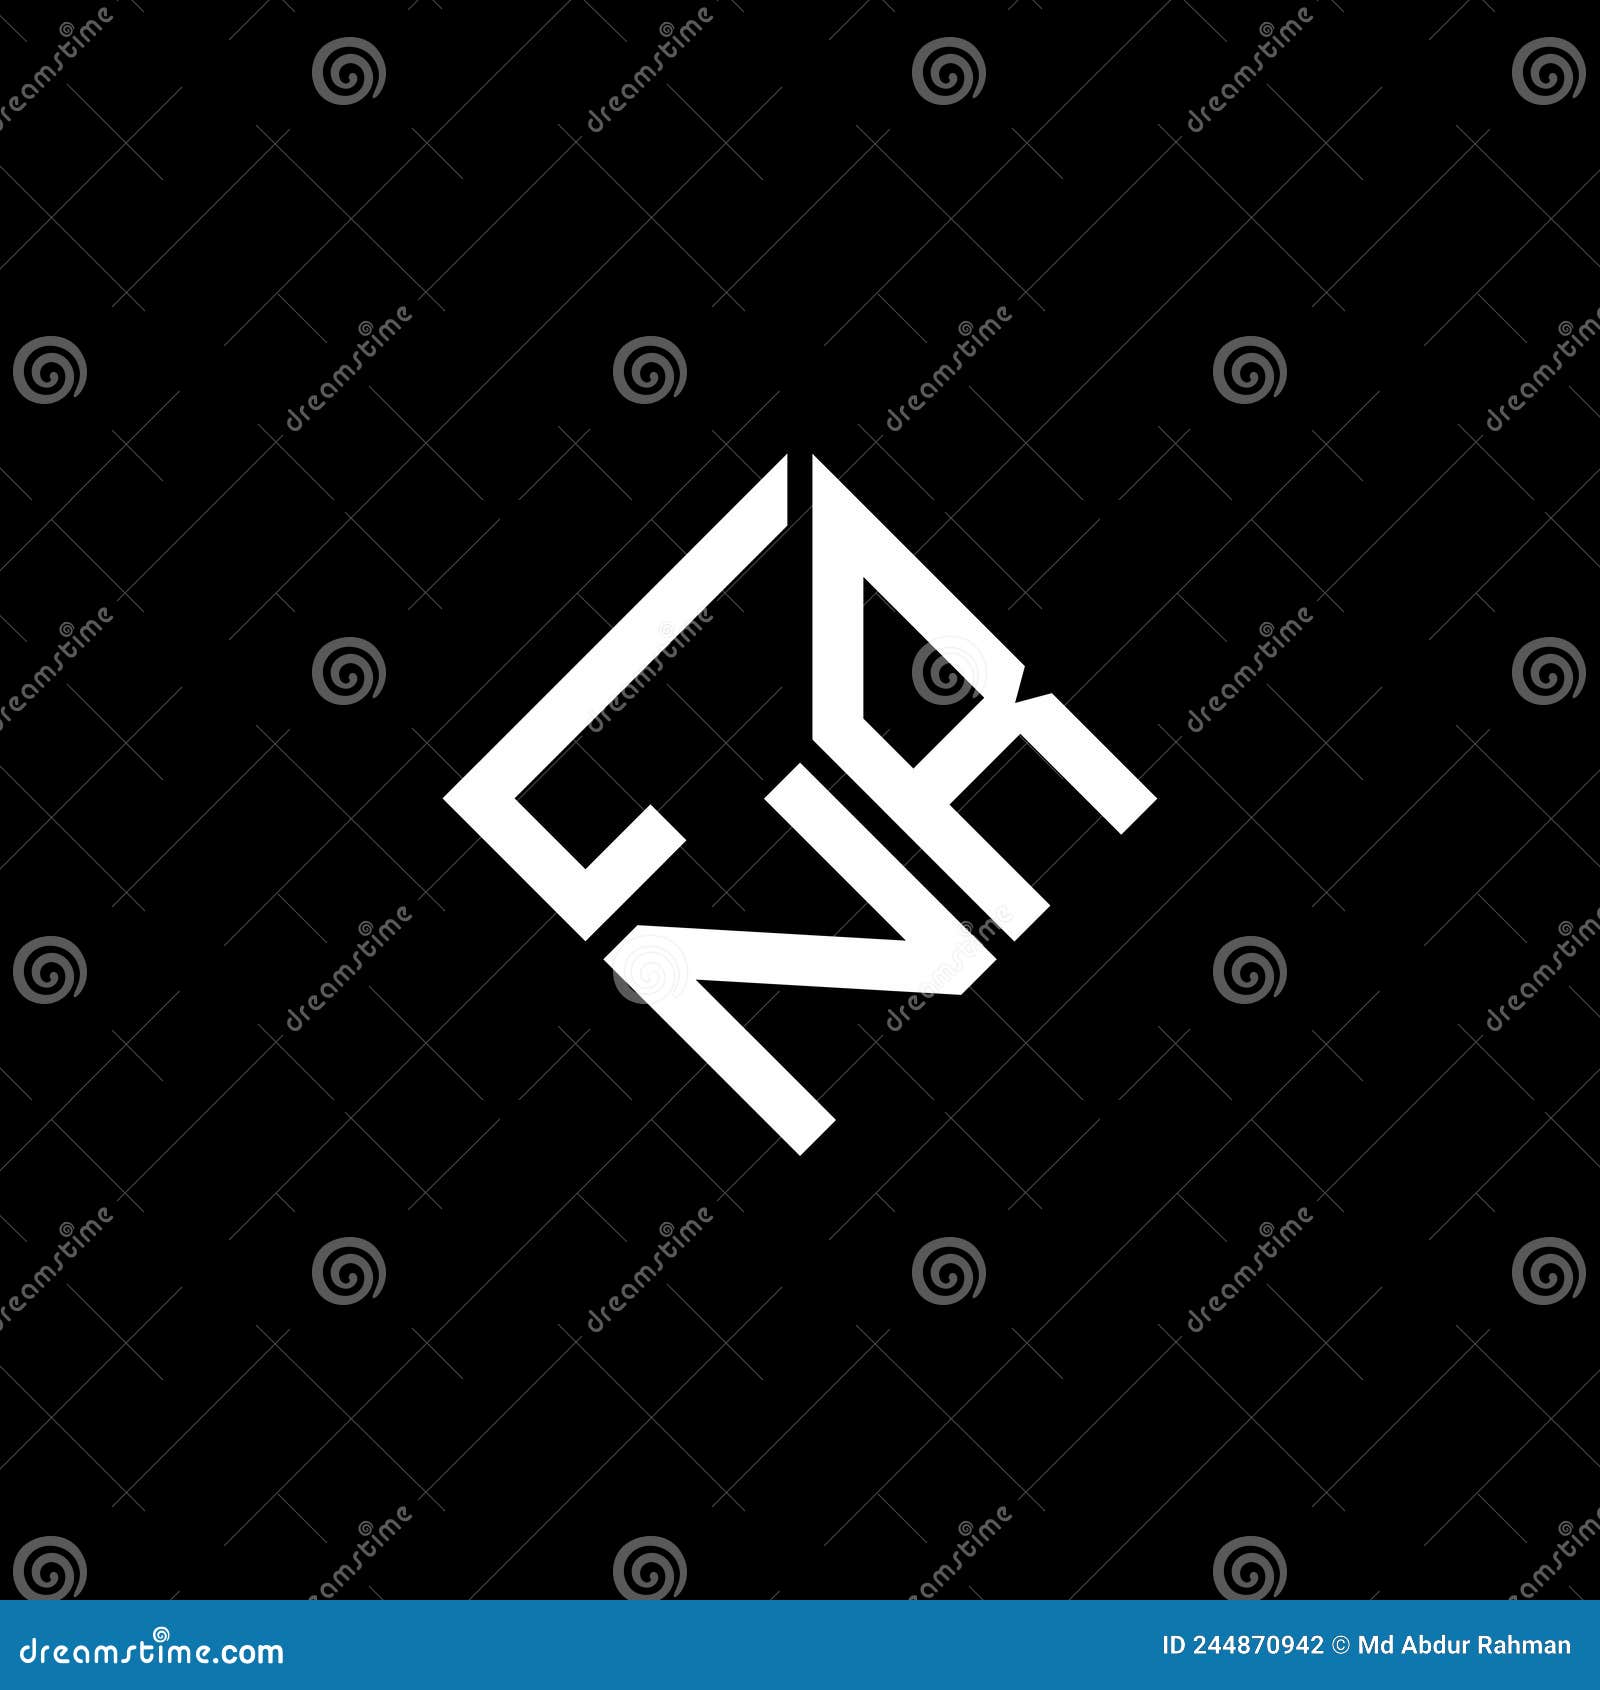 lnr letter logo  on black background. lnr creative initials letter logo concept. lnr letter 